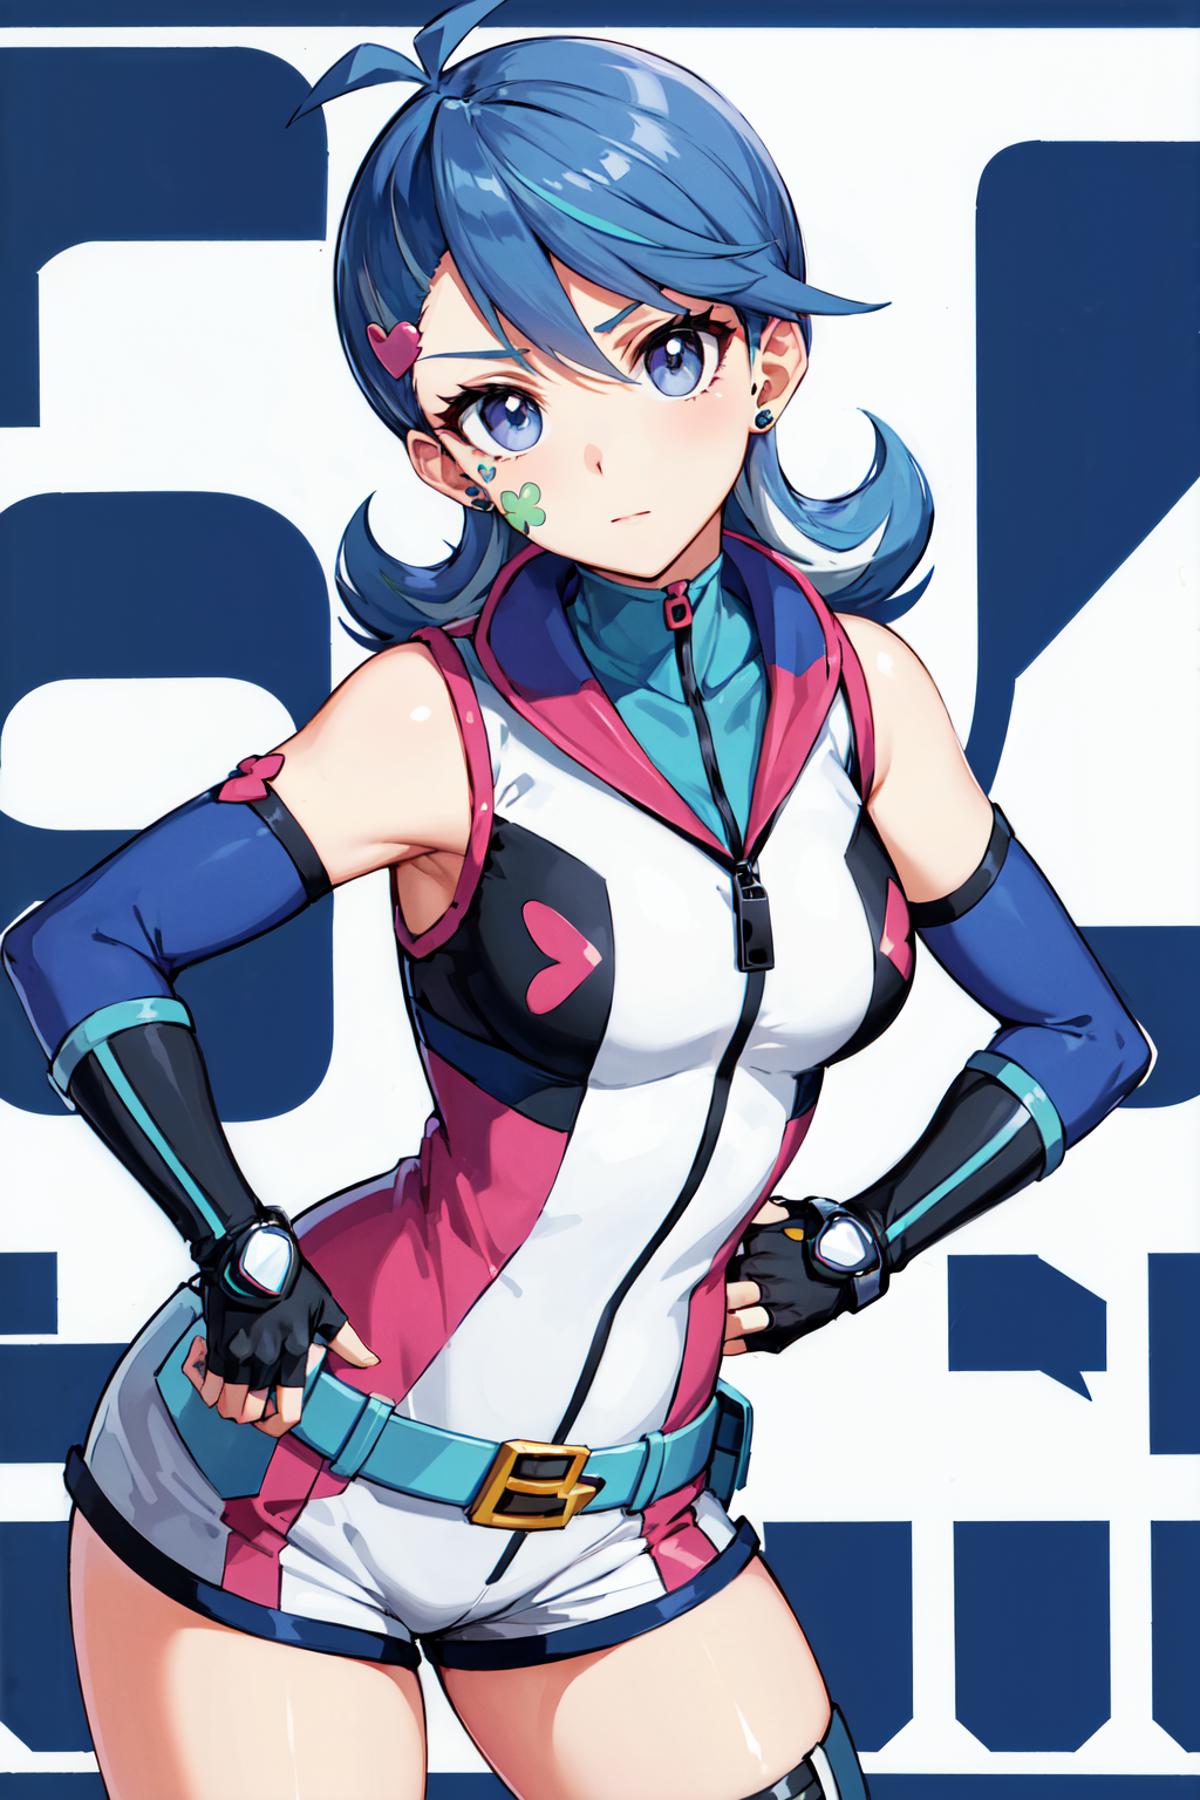 Blue Girl ブルーガール / Yu-Gi-Oh! image by h_madoka